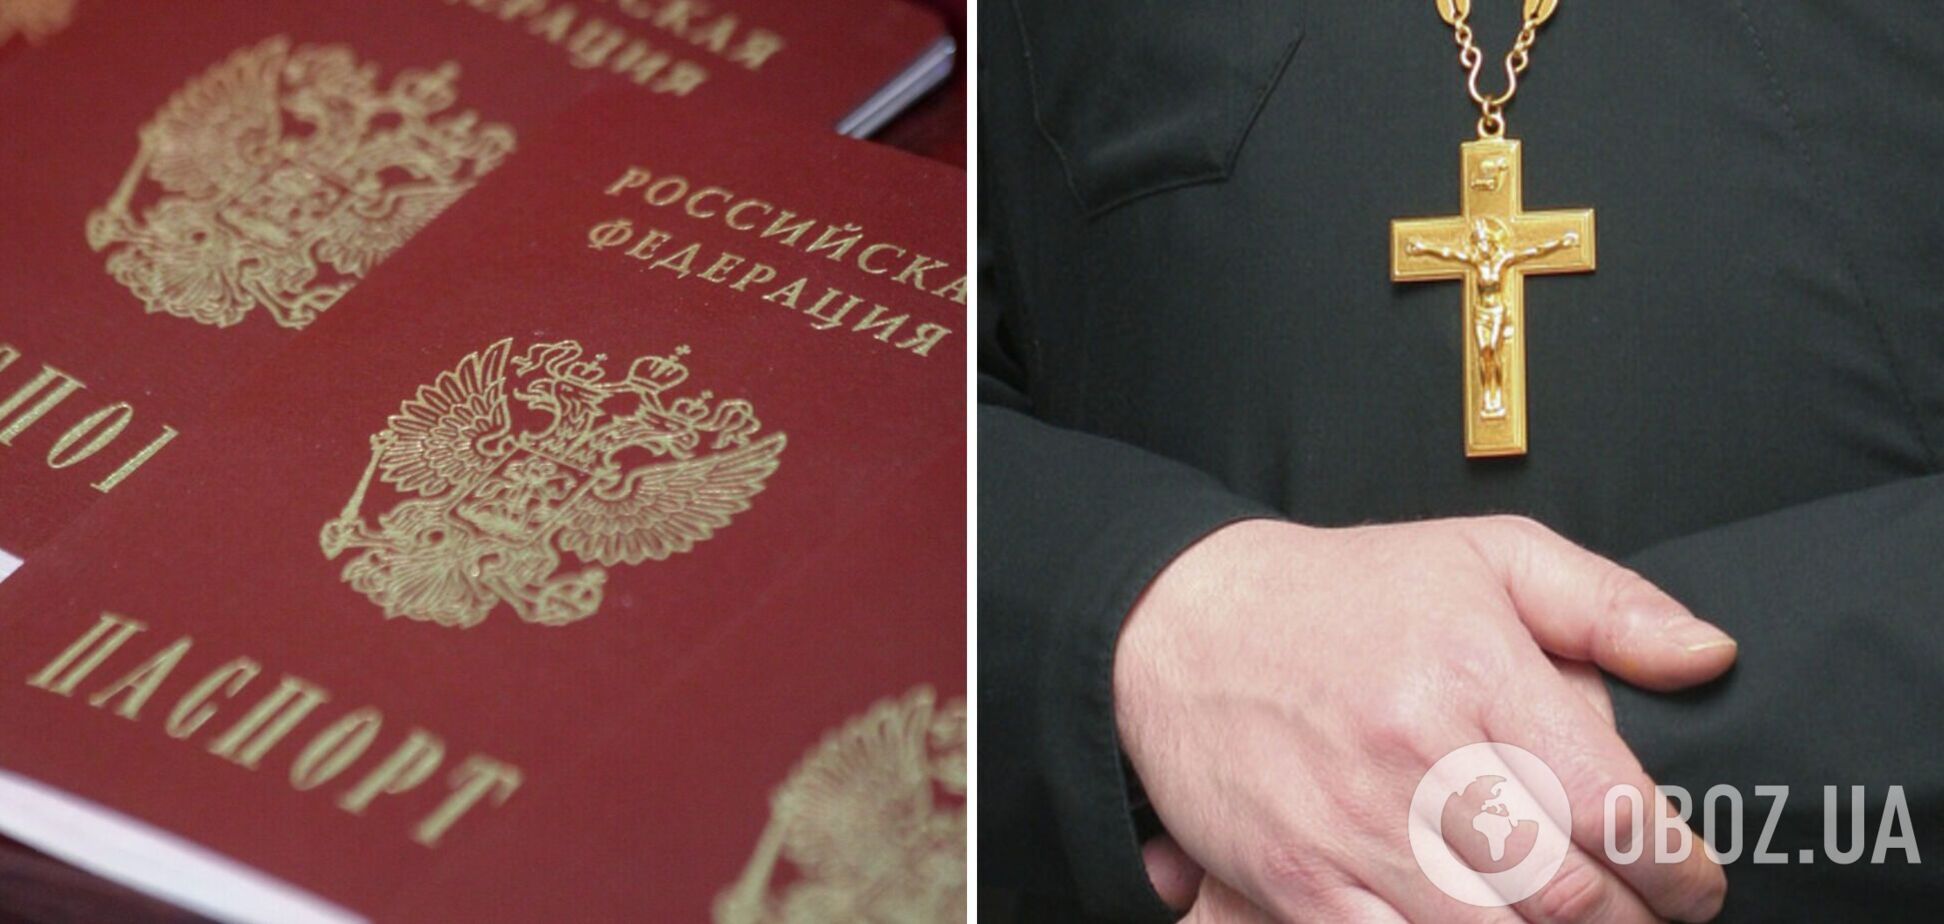 Из Украины депортируют настоятеля монастыря из Закарпатья, у которого был найден российский паспорт. Фото